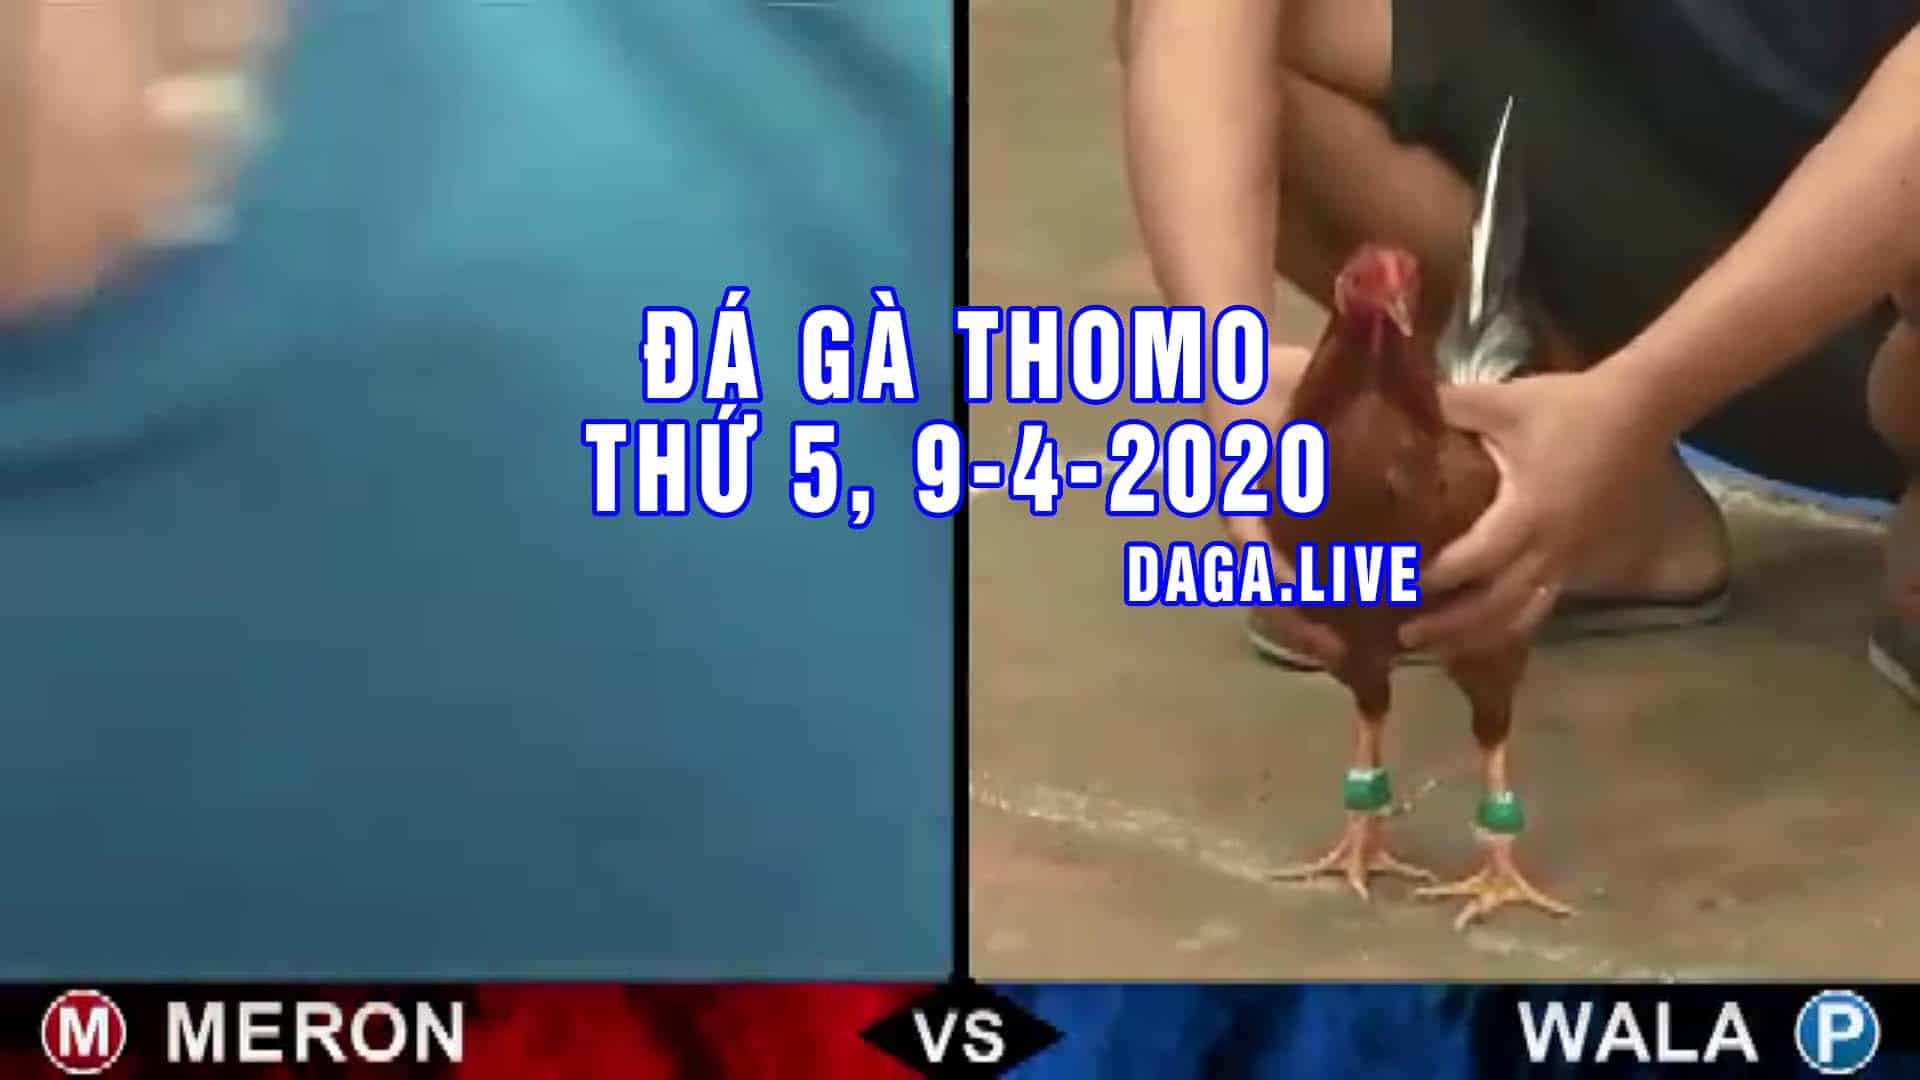 DAGA.LIVE - Đá gà trực tiếp thomo hôm nay, đá gà thomo, đá gà campuchia thứ 5 ngày 9-4-2020